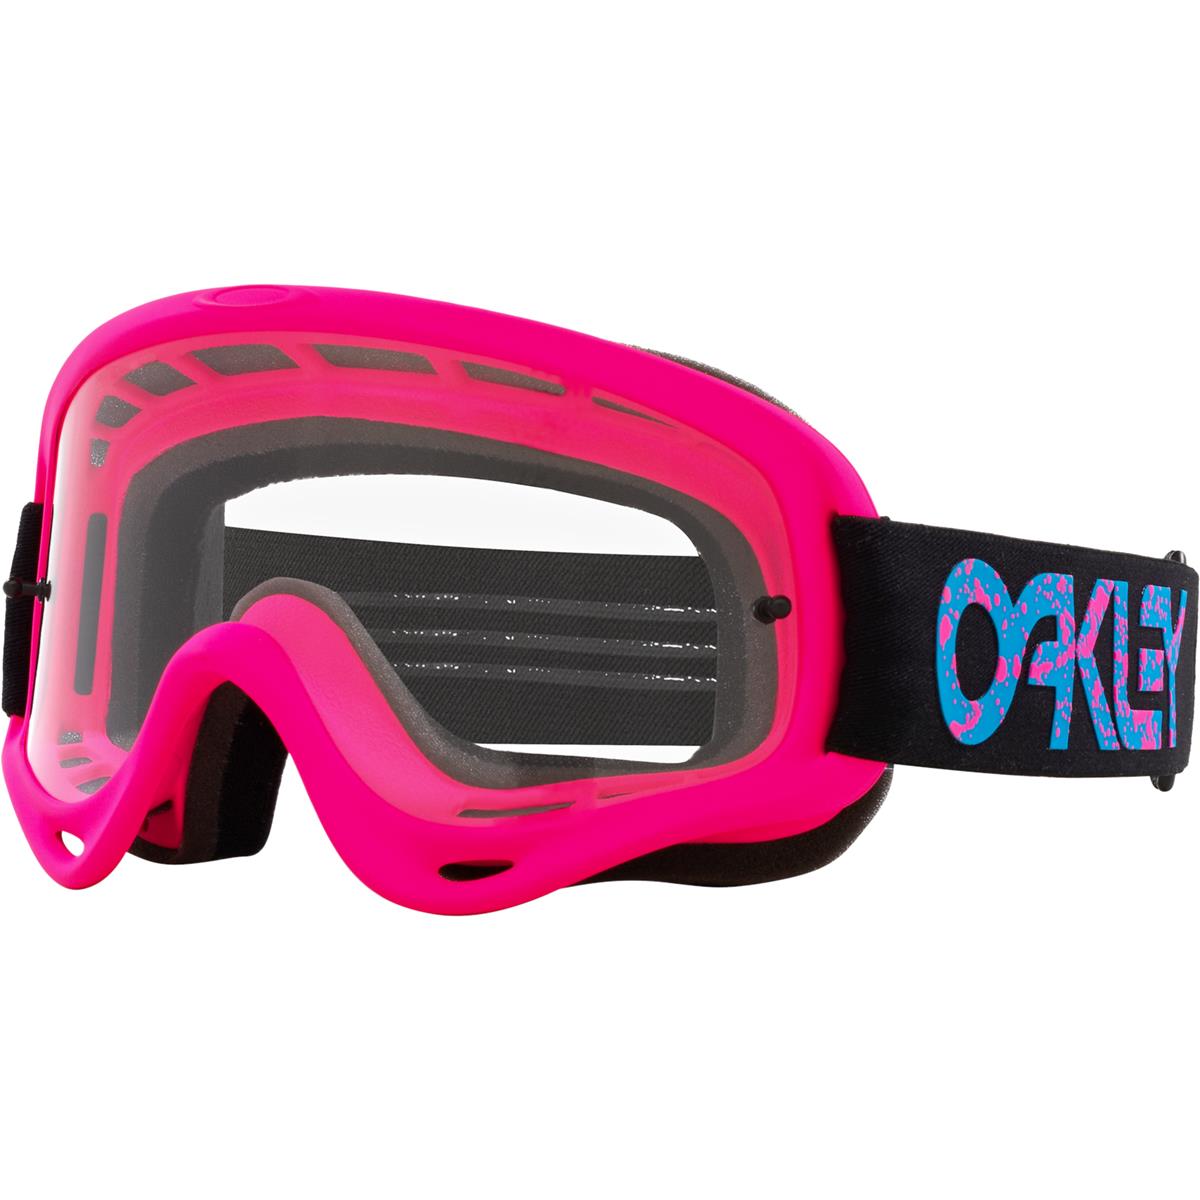 Oakley Masque O Frame MX Pink Splatter - Clear